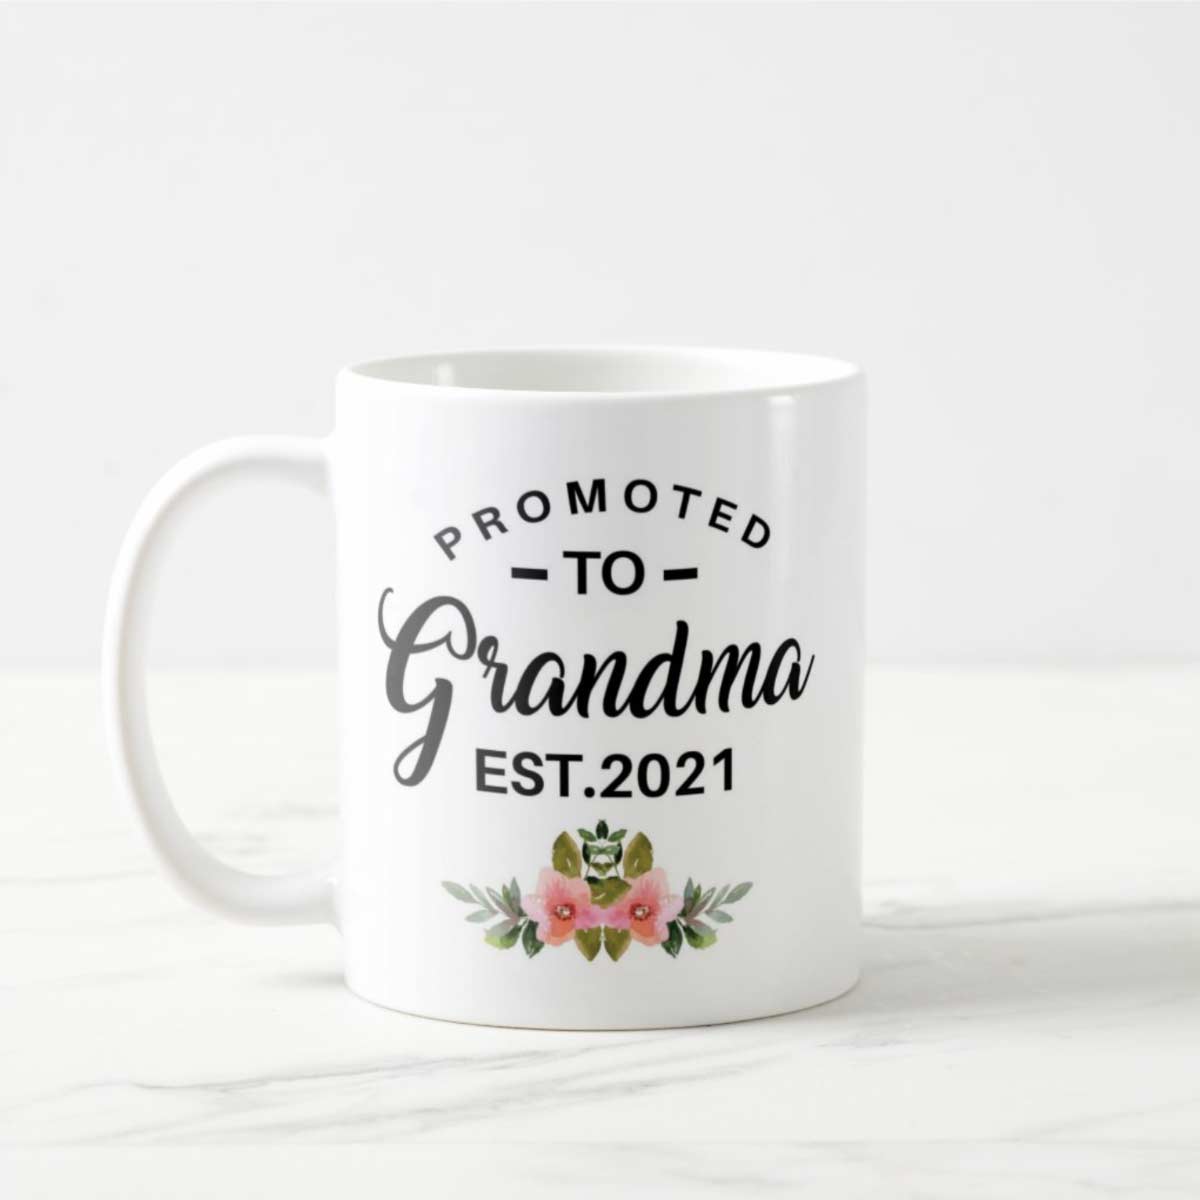 Promoted to Grandmaa Coffee Mug